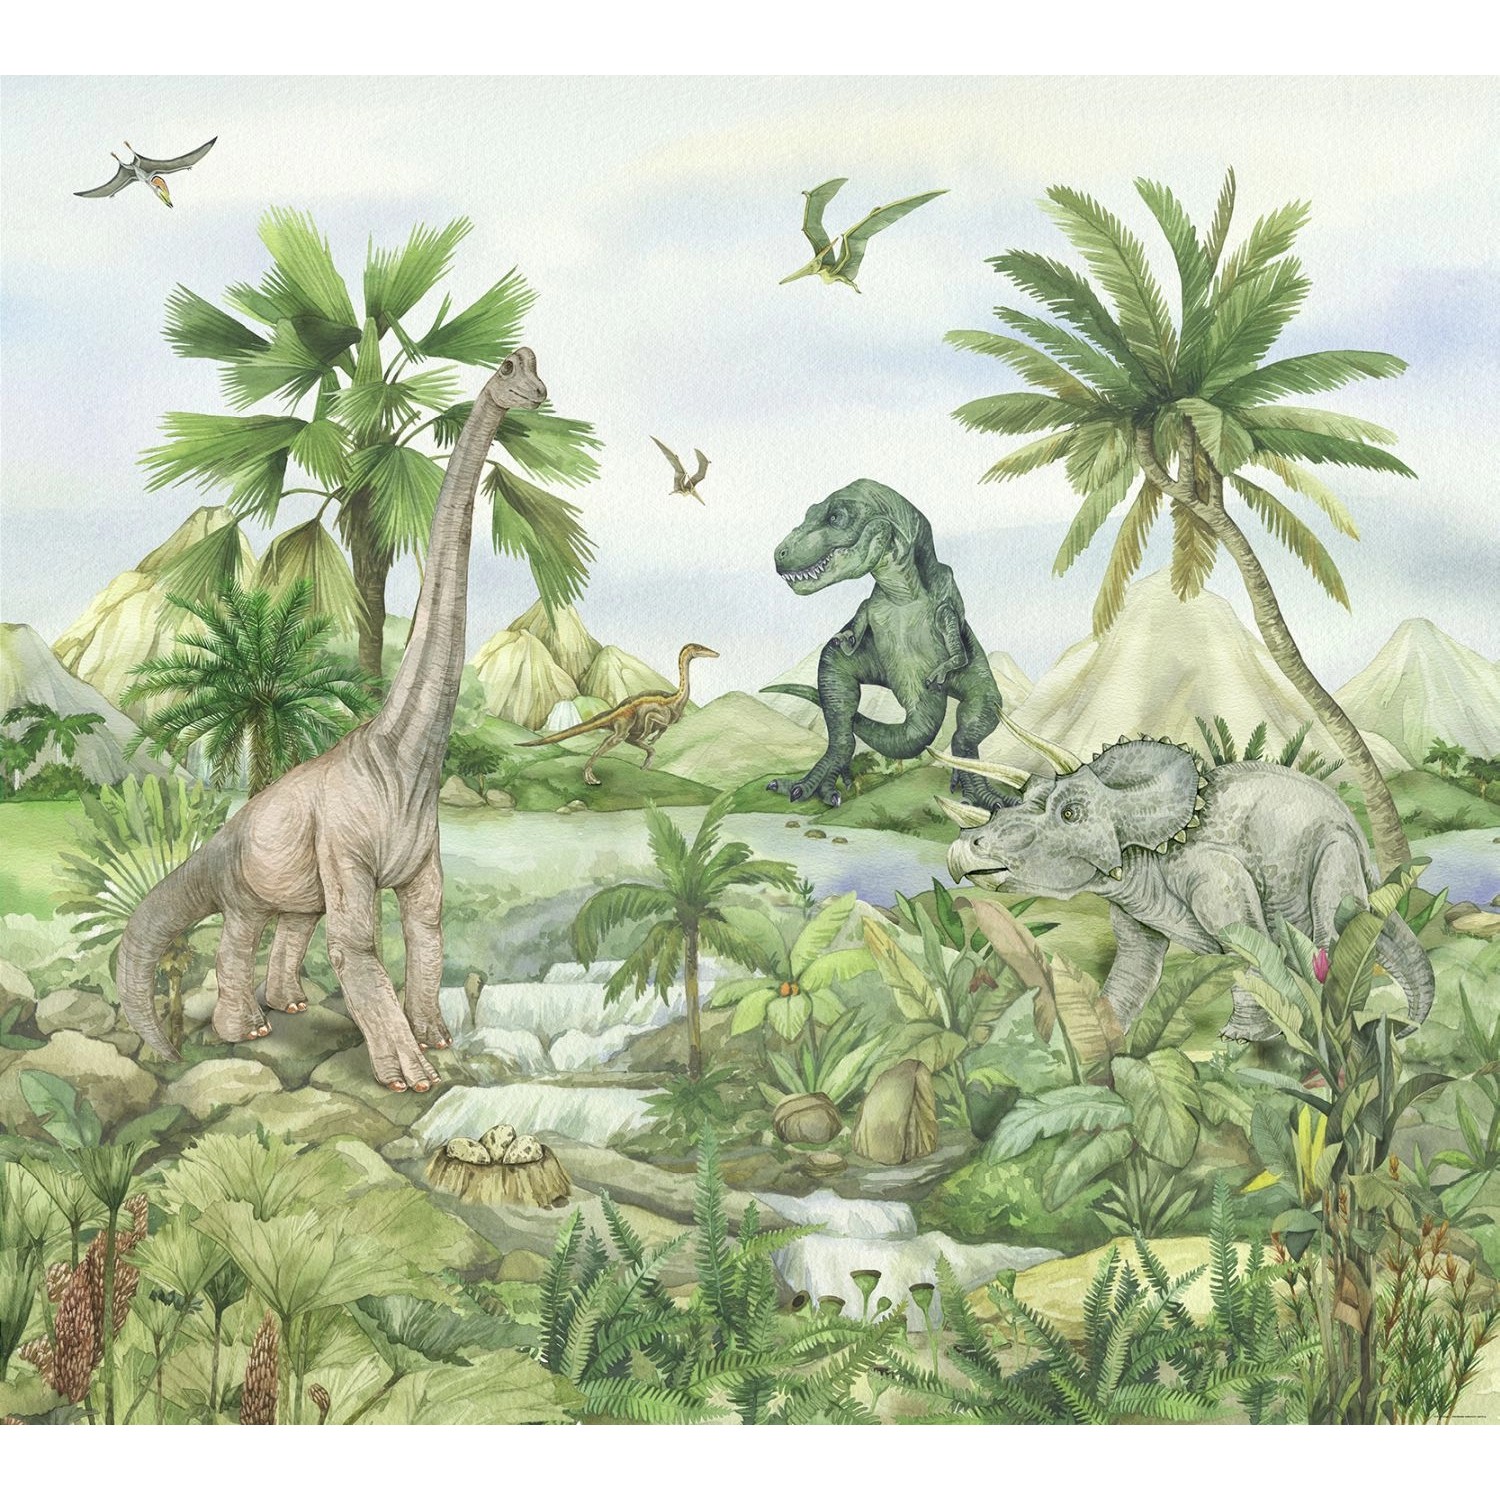 Sanders & Sanders Fototapete Dinosaurier Grün 3 x 2,7 m 601185 günstig online kaufen